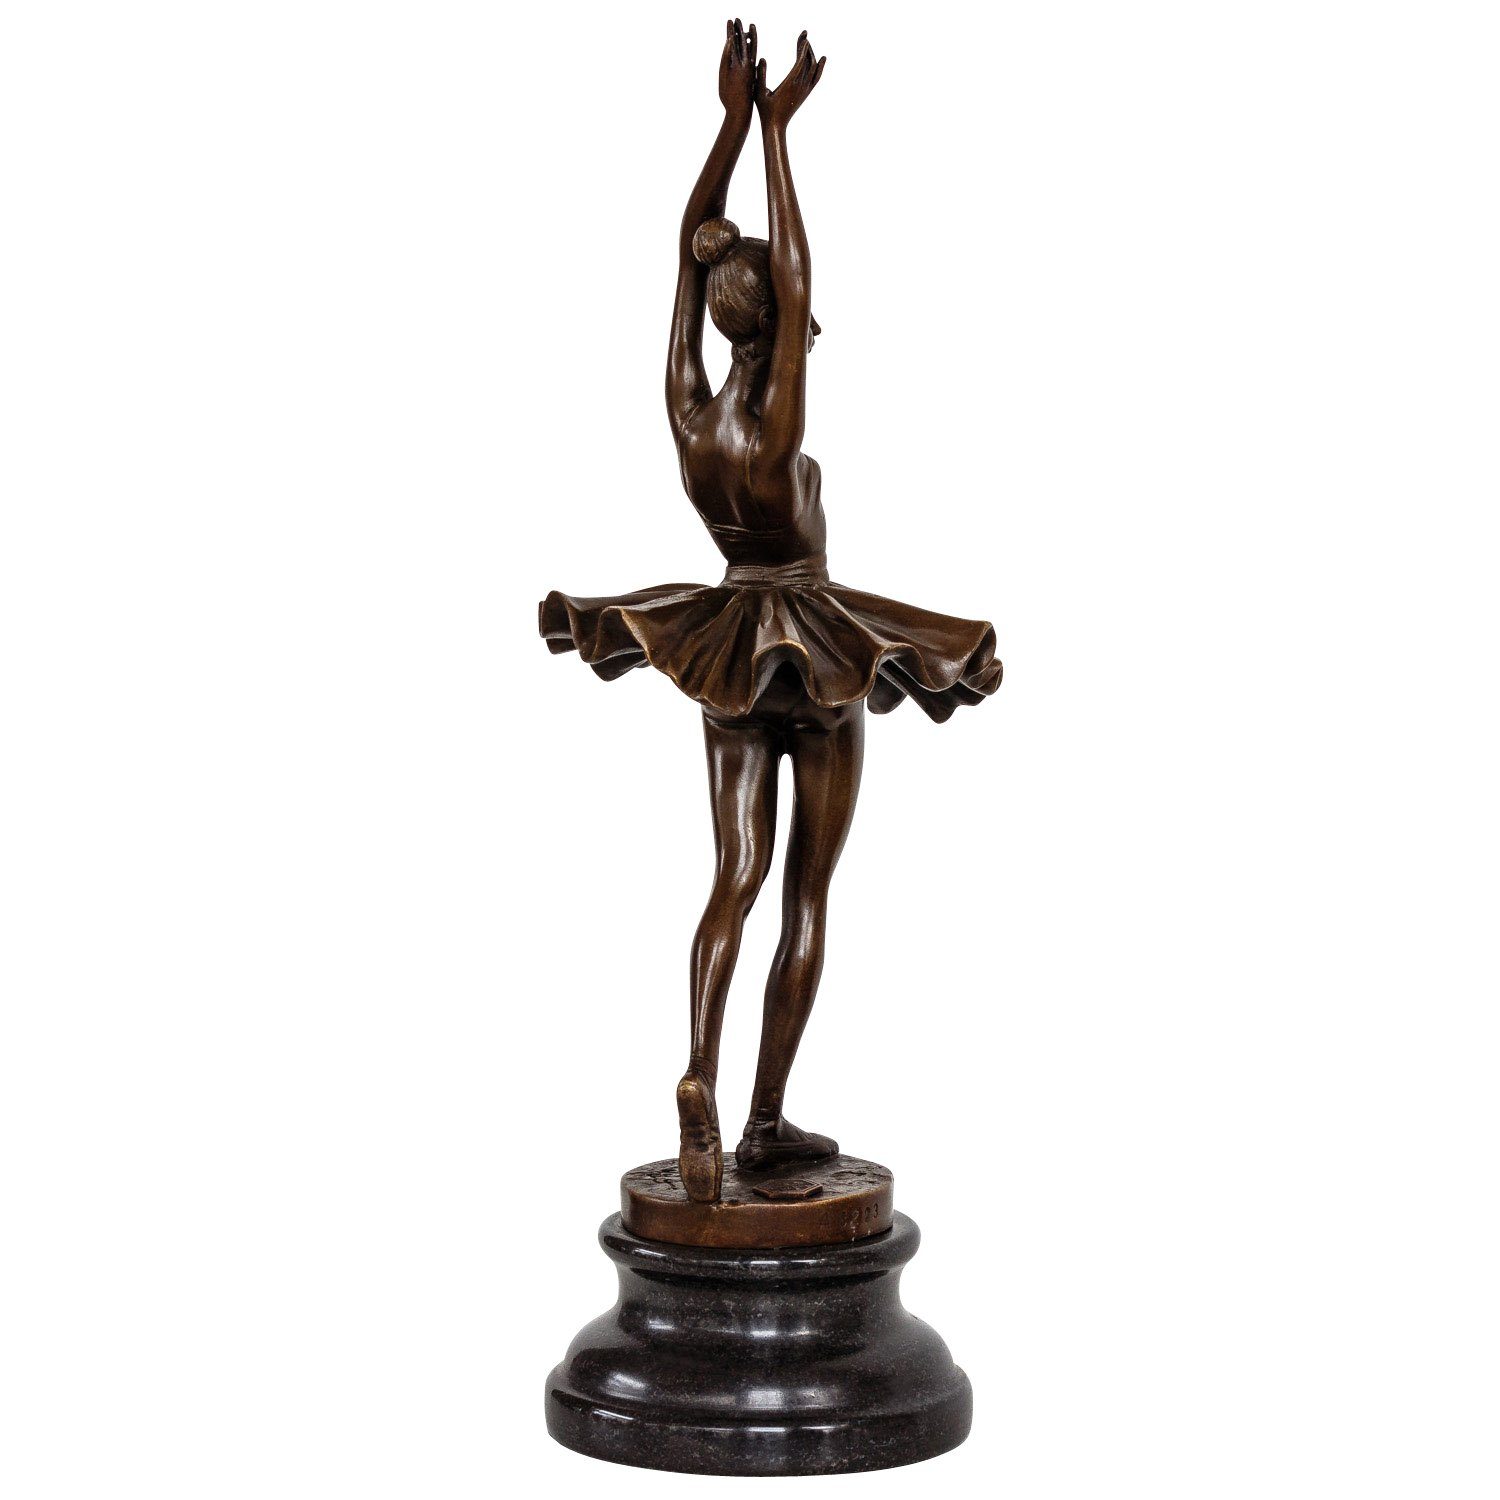 Skulptur Repl nach Ballett Aubaho Ballerina Bronzeskulptur Degas Tänzerin Figur Bronze